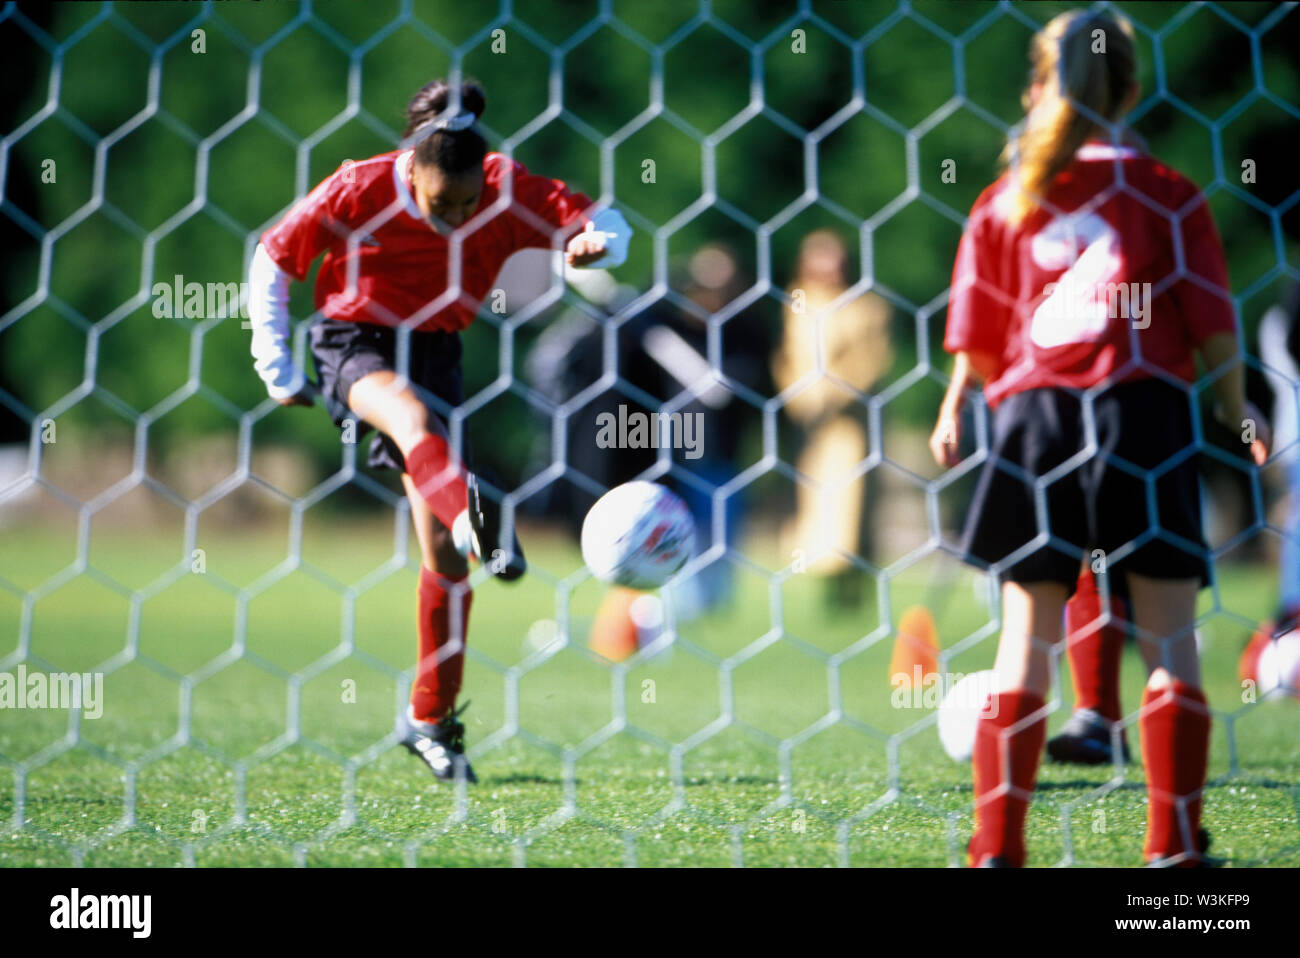 Ein Mädchen tritt ein Fußball während der Torwart steht warten, wie von hinter dem Tor gesehen. Stockfoto